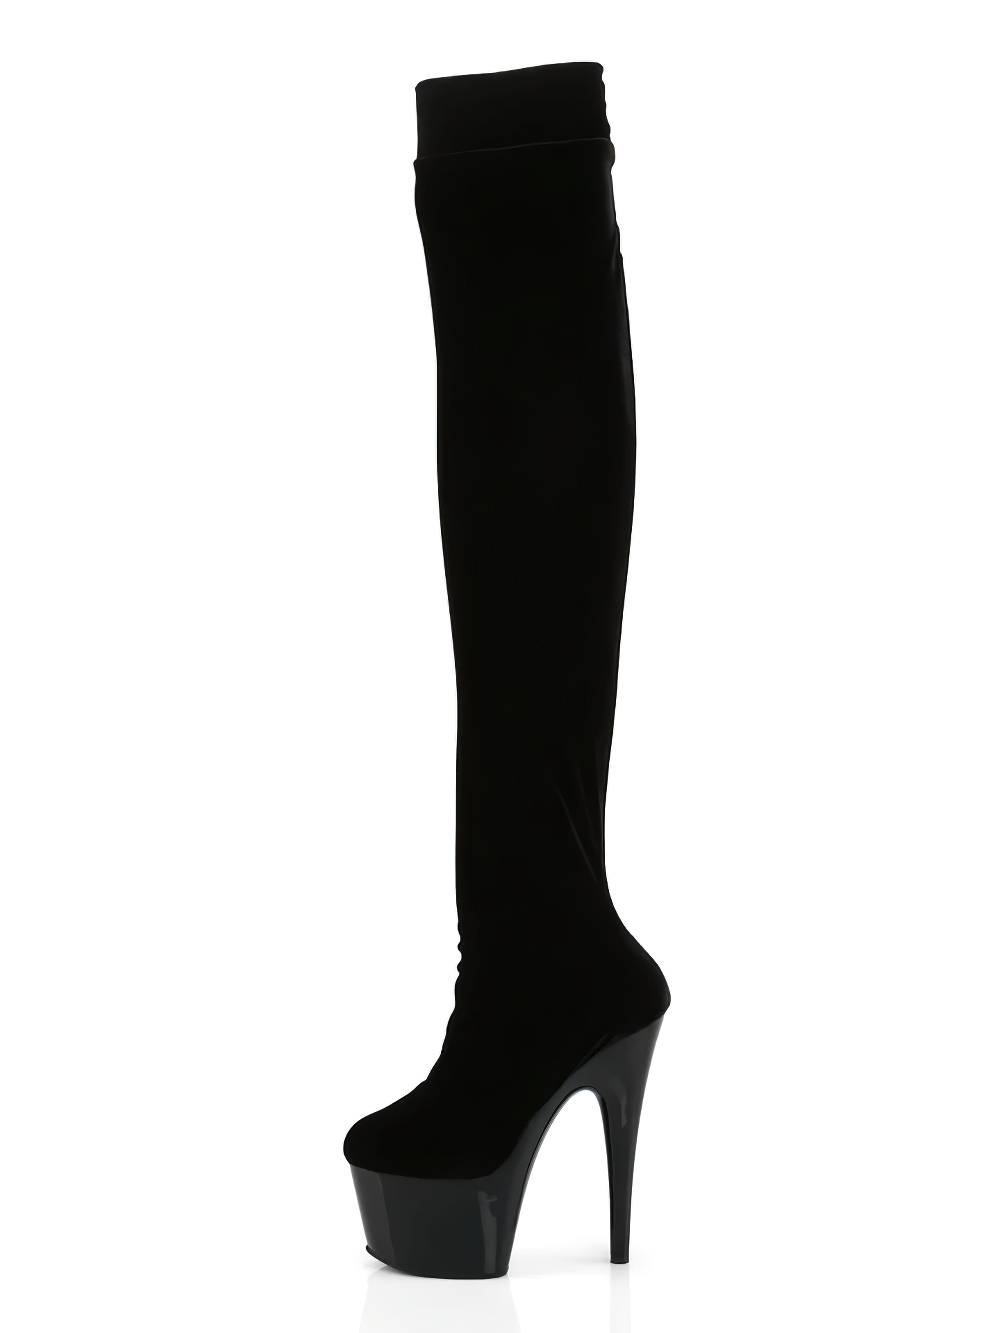 PLEASER Female Black Velvet Thigh High Stiletto Boots